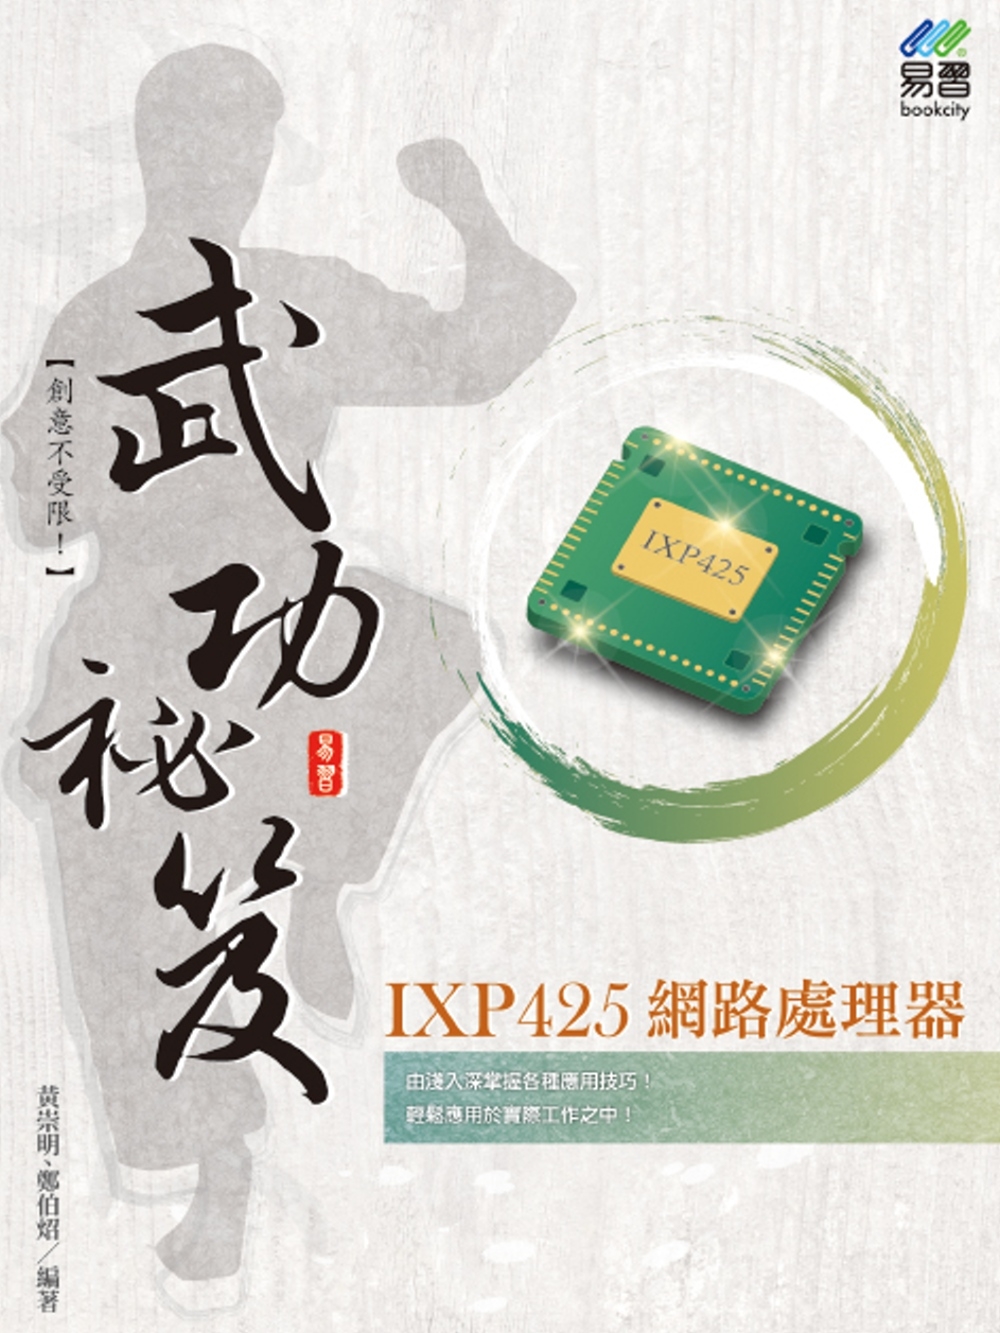 IXP425 網路處理器 武功...